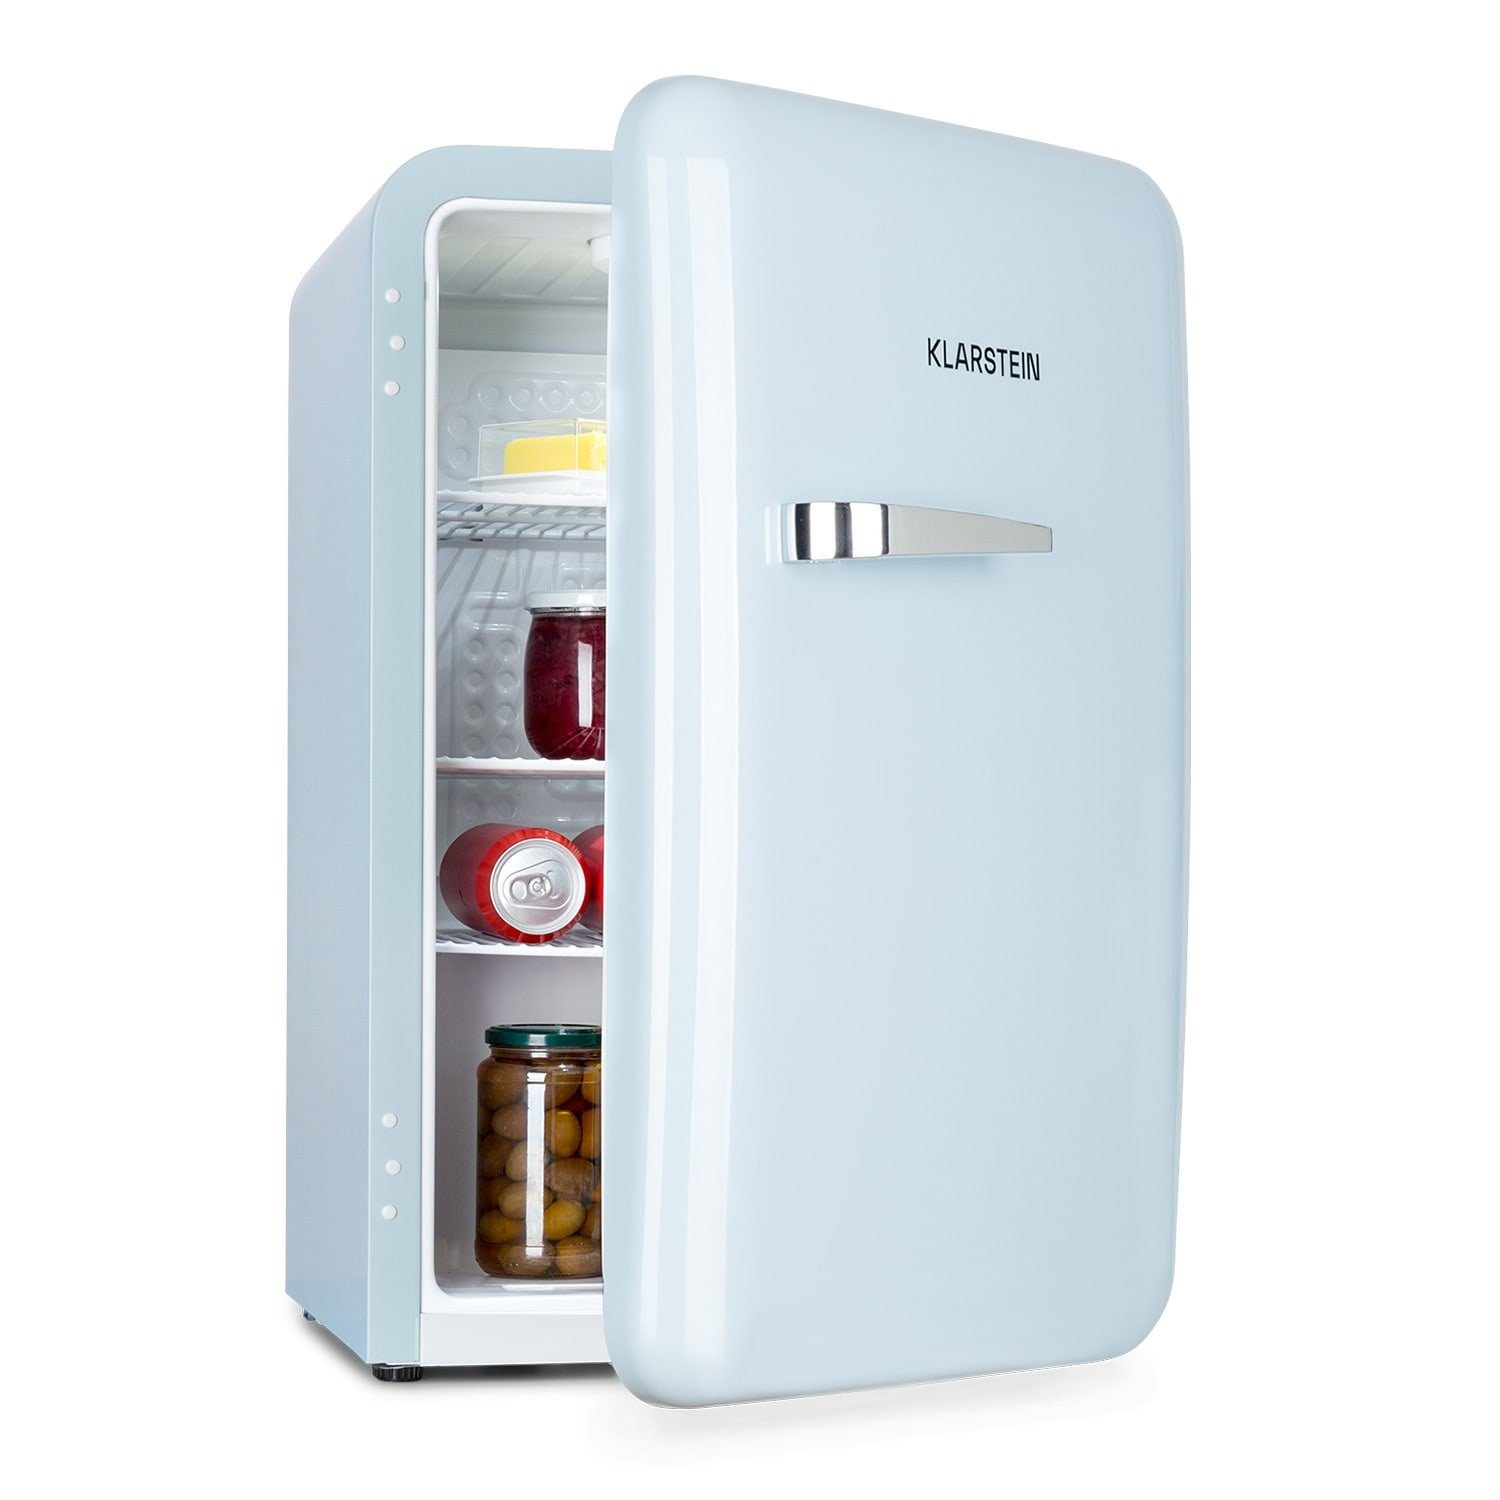 Klarstein Getränkekühlschrank Audrey Retro-Kühlschrank 70 Liter 3 Regale 2  Türfächer Innenbeleuchtung 10039693, 66 cm hoch, 43 cm breit